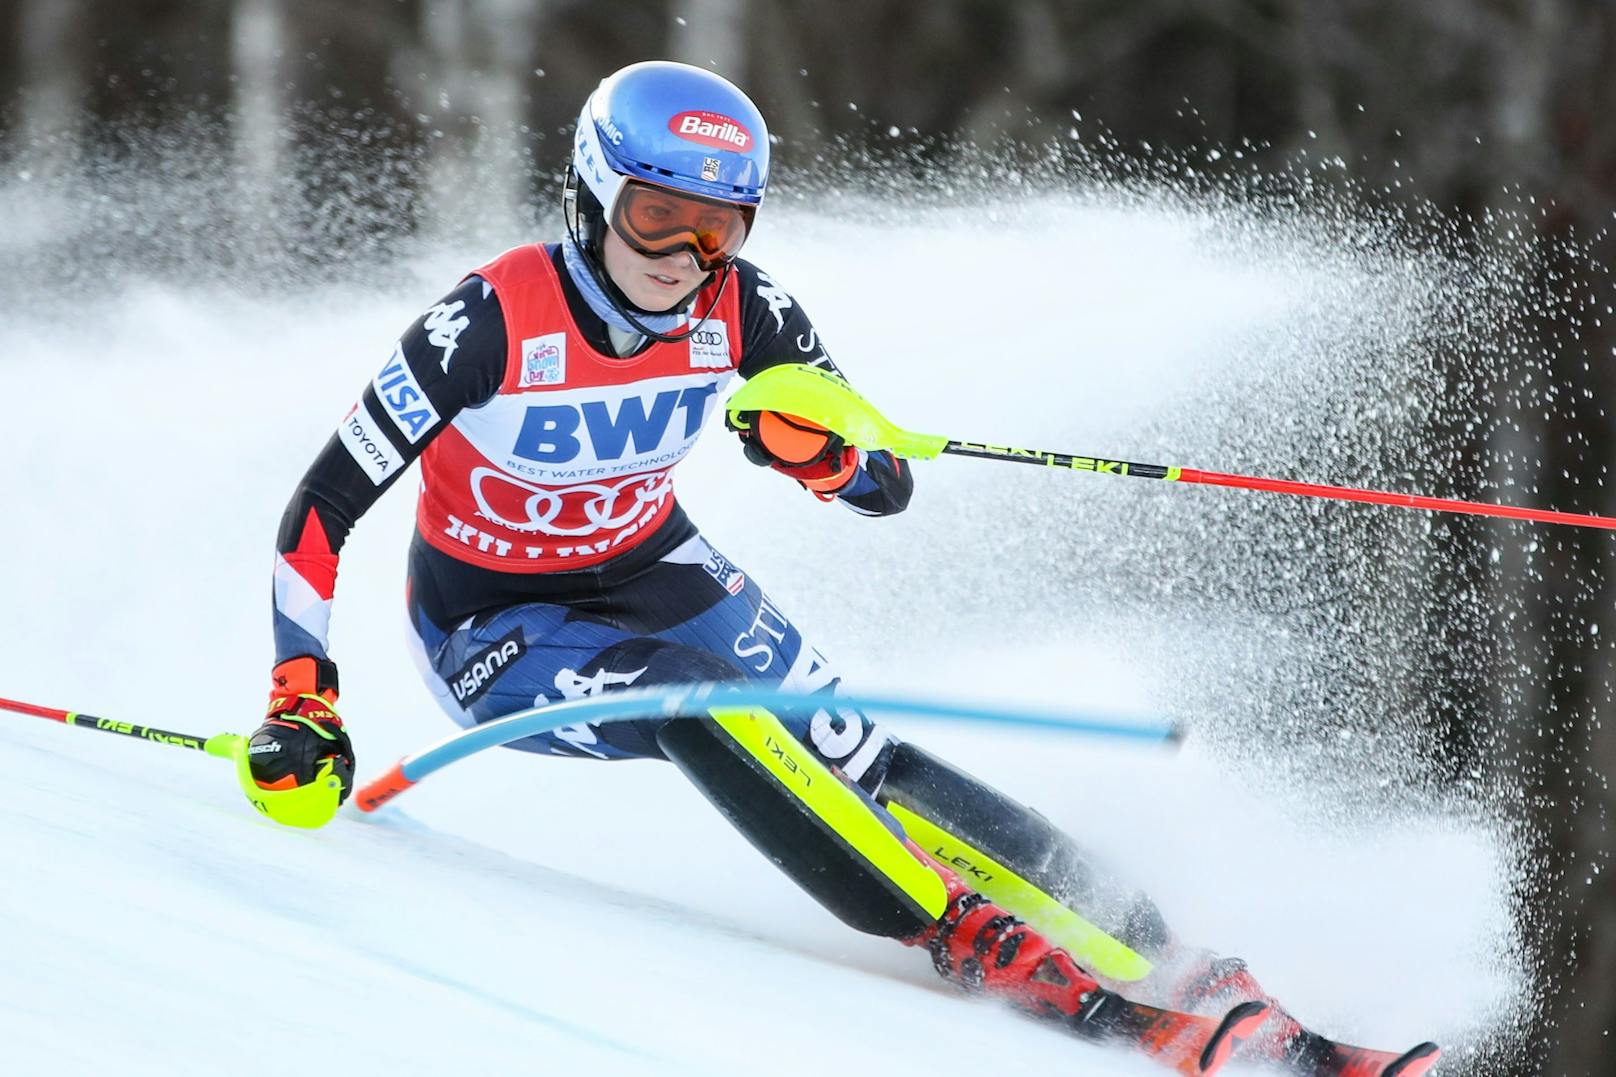 Mikaela Shiffrin sorgte im Slalom von Killington für ihren zweiten Saisonsieg, gewann das zweite Rennen in den USA vor Petra Vlhova und Wendy Holdener.